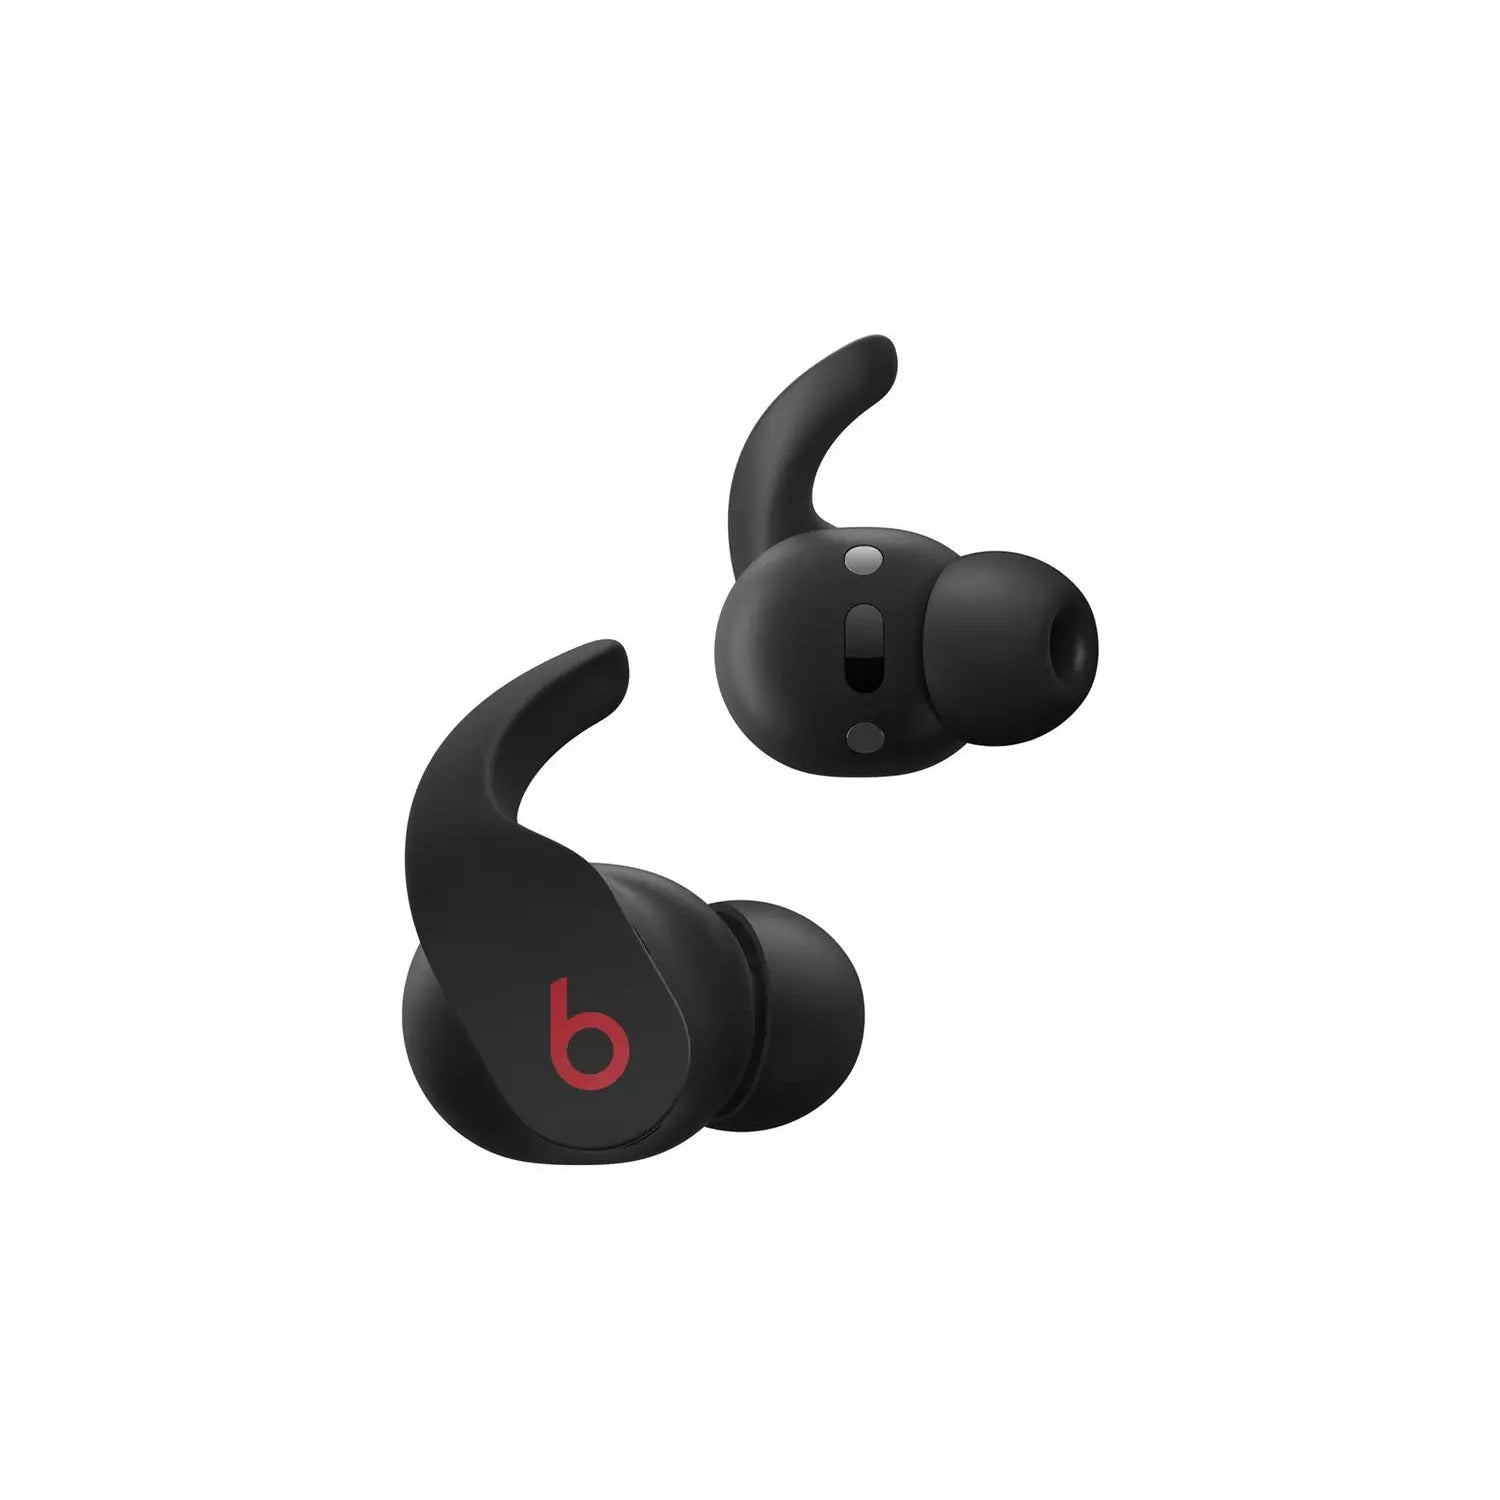 Beats Fit Pro True Wireless In-Ear Earbuds - Black - Refurbished Good